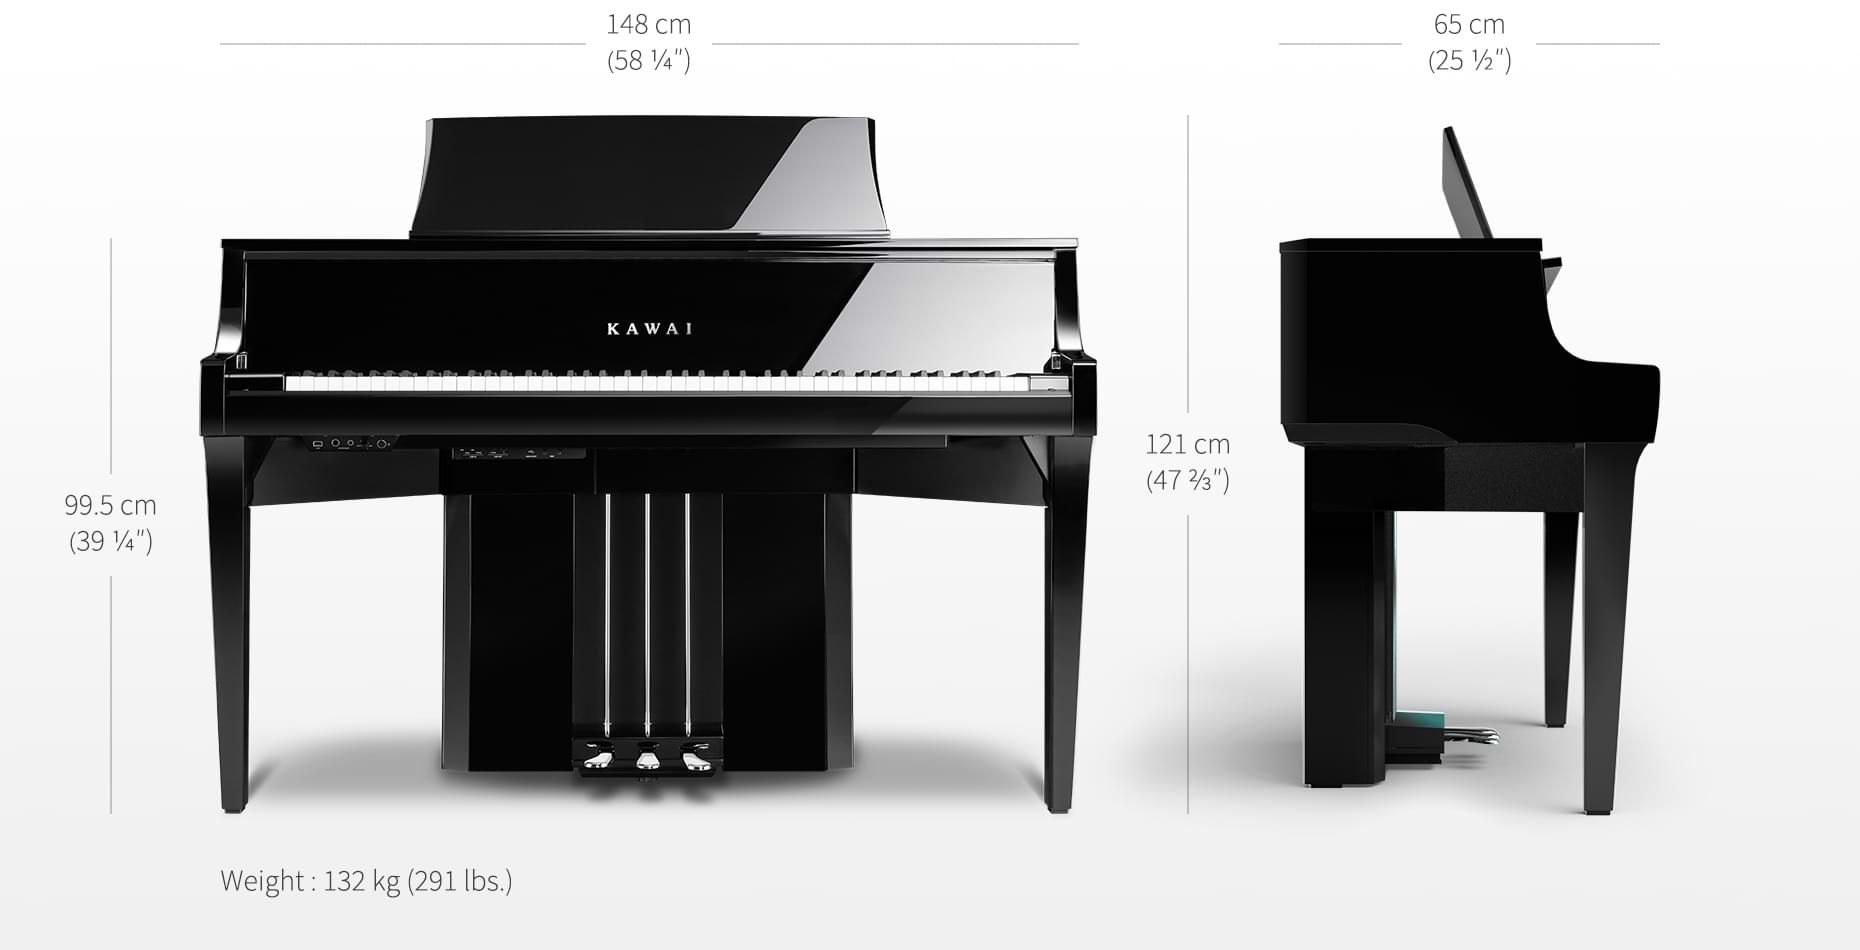 Kawai Nv 10 S - Digital piano with stand - Variation 7